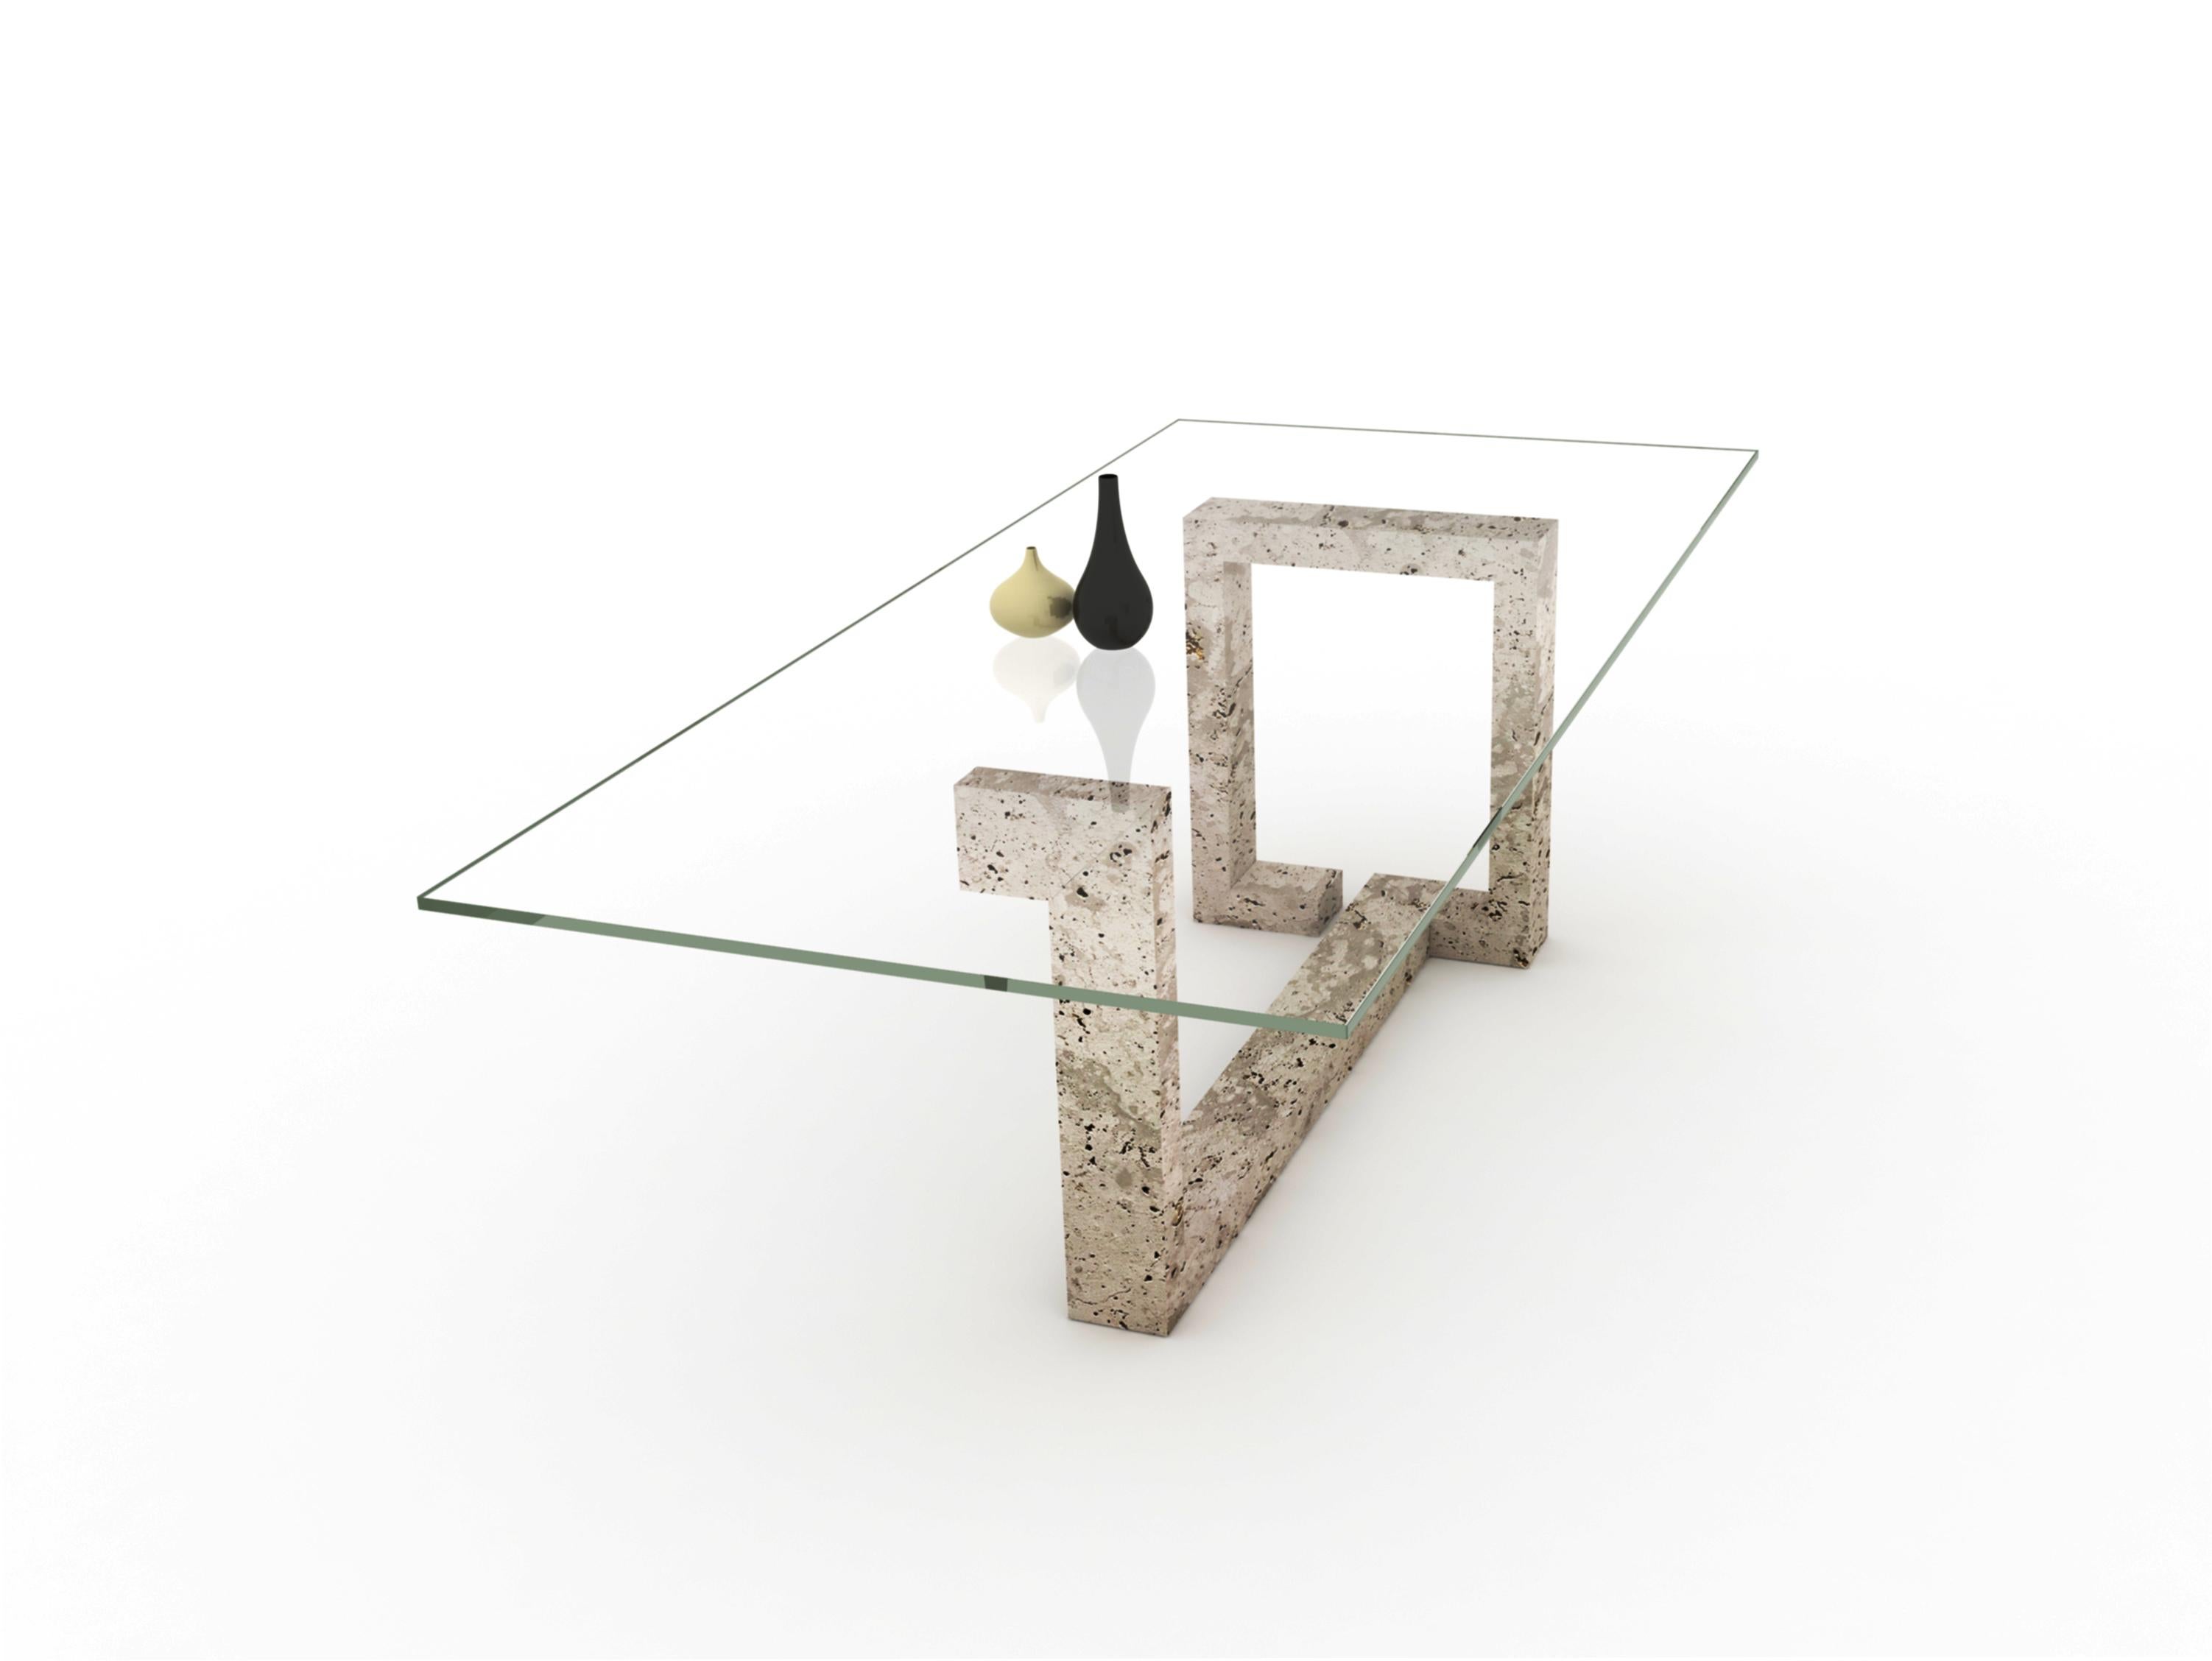 La table à manger OTEYZA en marbre travertin est conçue par Joaquín Moll pour Archivo Collection Meddel. Une structure linéaire en marbre avec une surface en verre transparent. Un design de table artistique et sculptural.

OTEYZA est une table